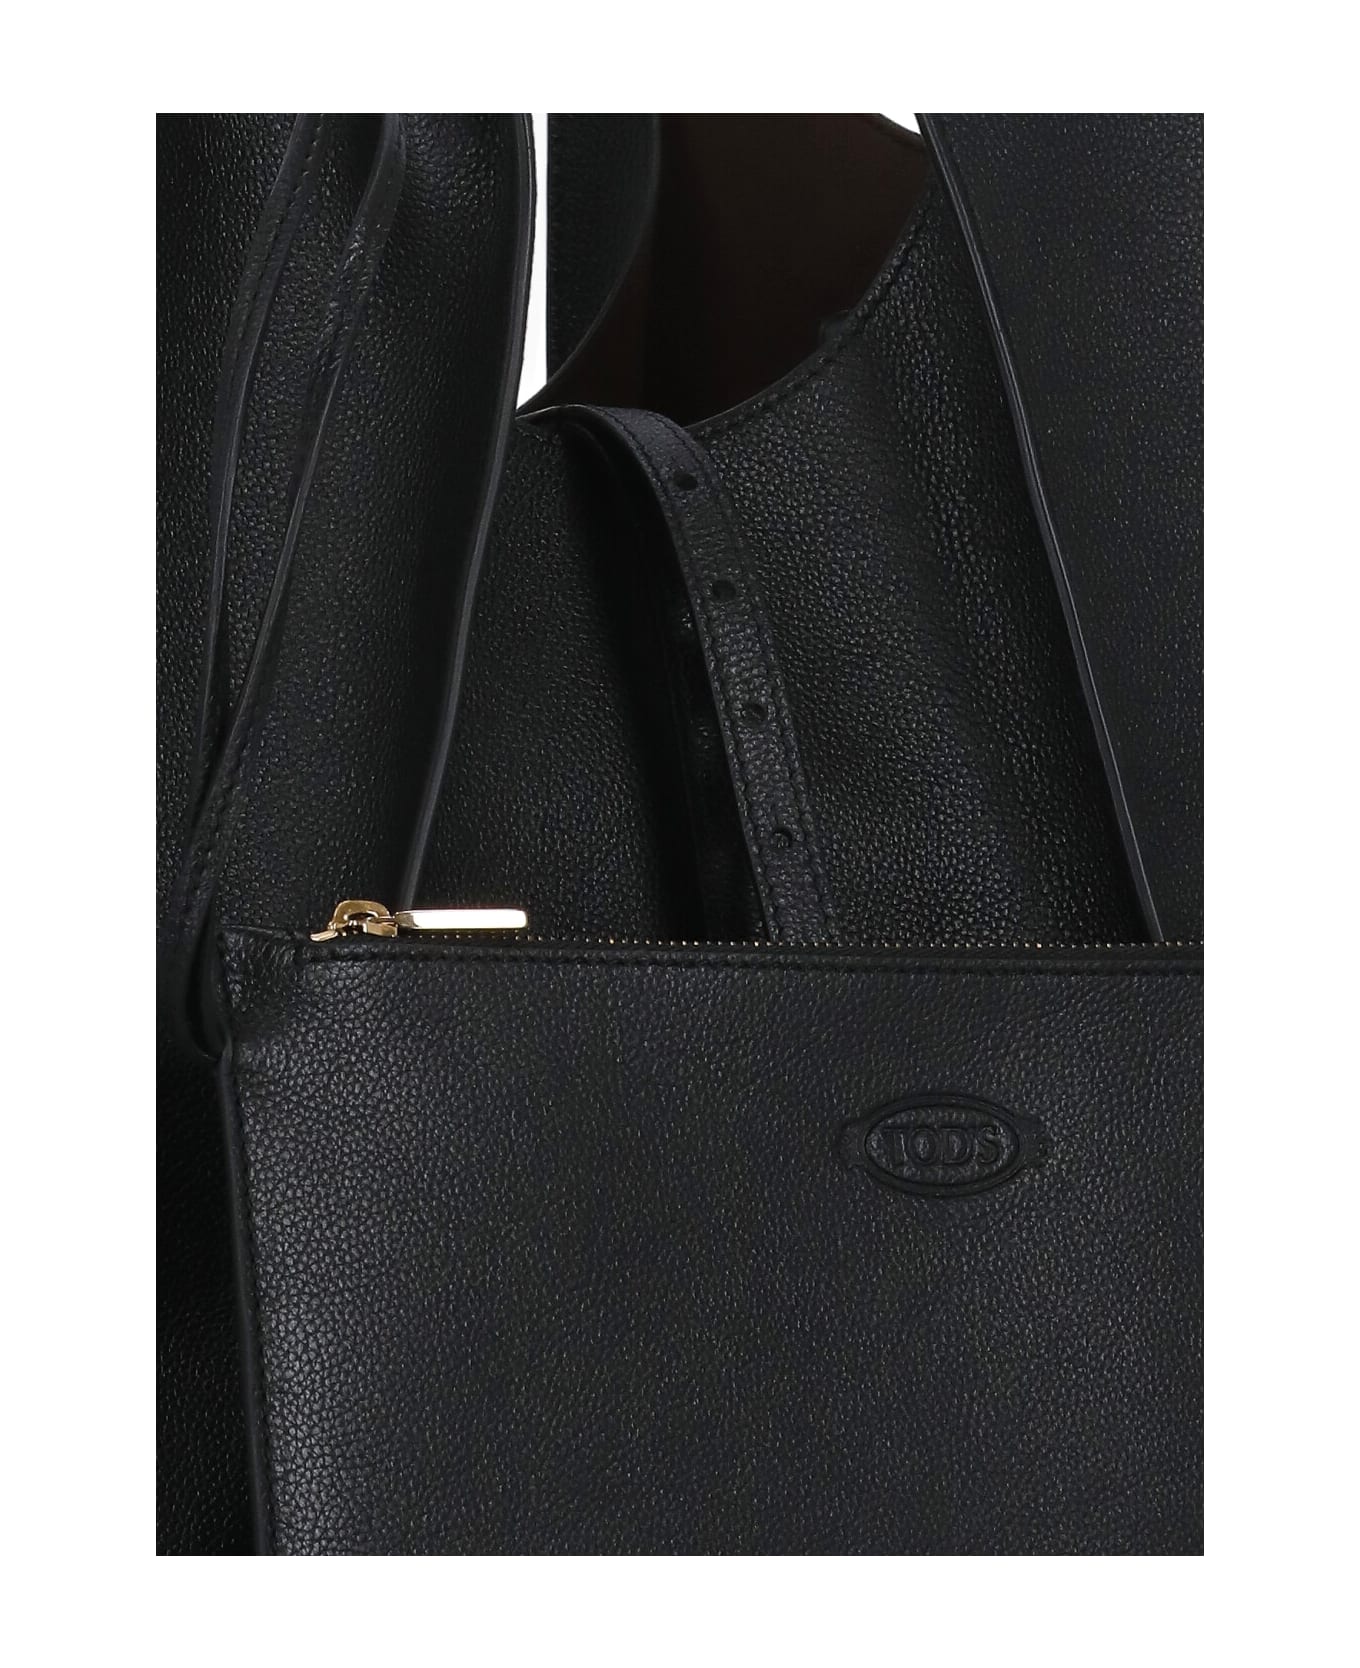 Tod's T-timeless Mini Shopping Bag - Black